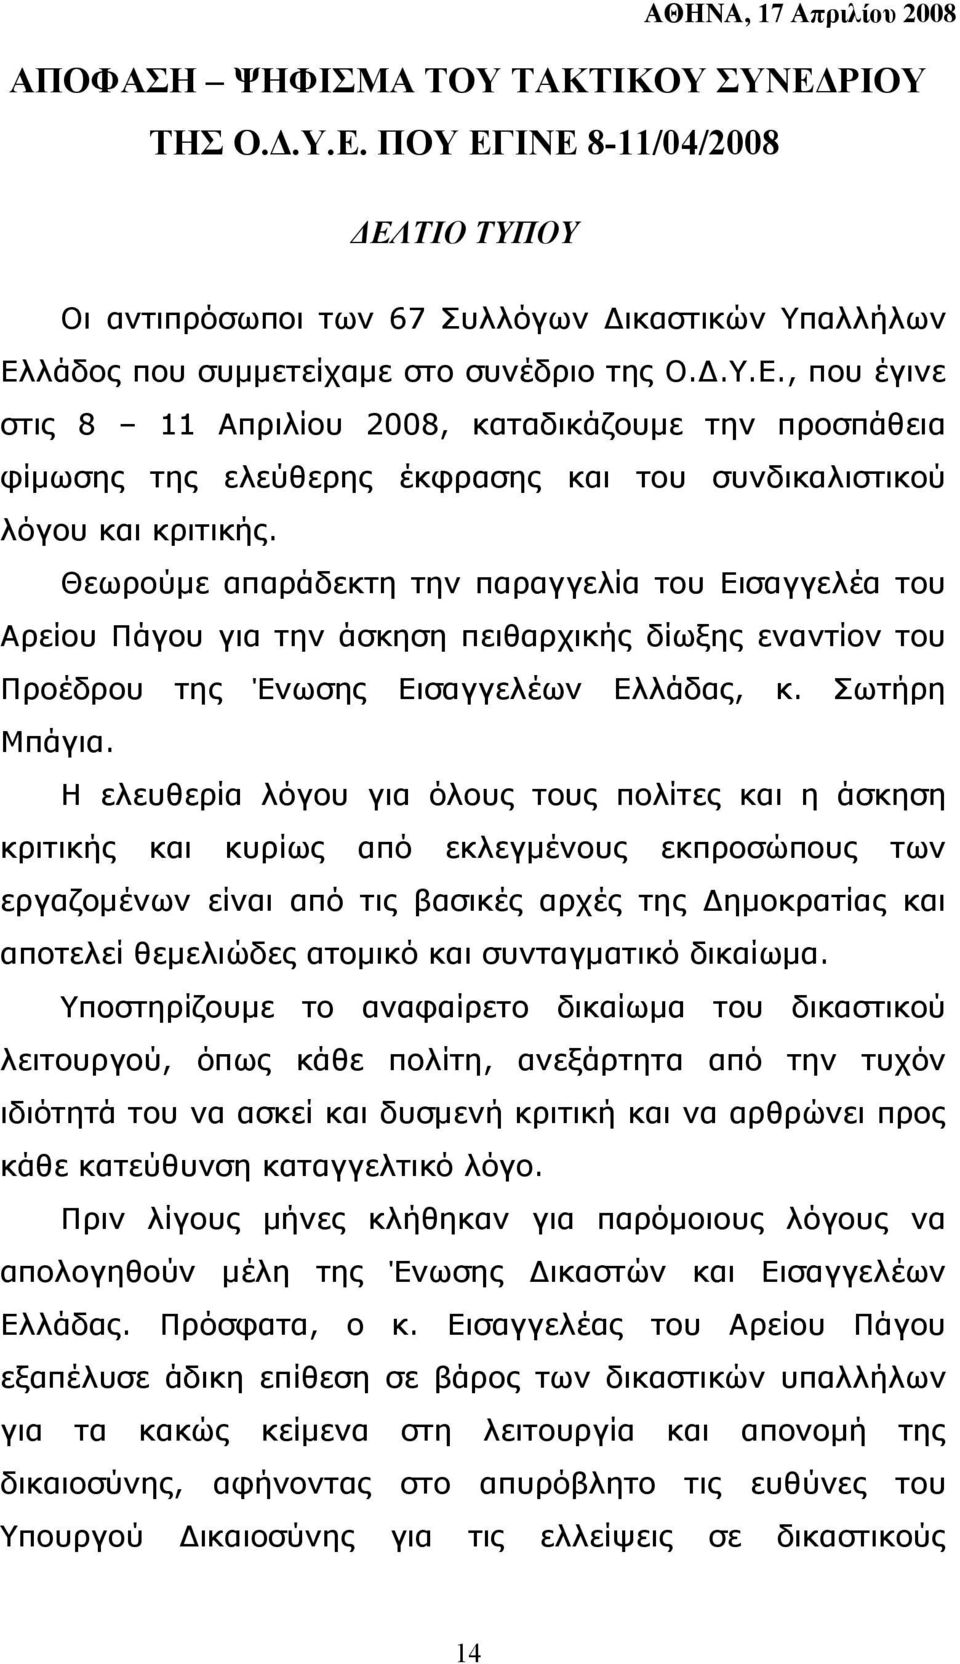 Θεωρούµε απαράδεκτη την παραγγελία του Εισαγγελέα του Αρείου Πάγου για την άσκηση πειθαρχικής δίωξης εναντίον του Προέδρου της Ένωσης Εισαγγελέων Ελλάδας, κ. Σωτήρη Μπάγια.